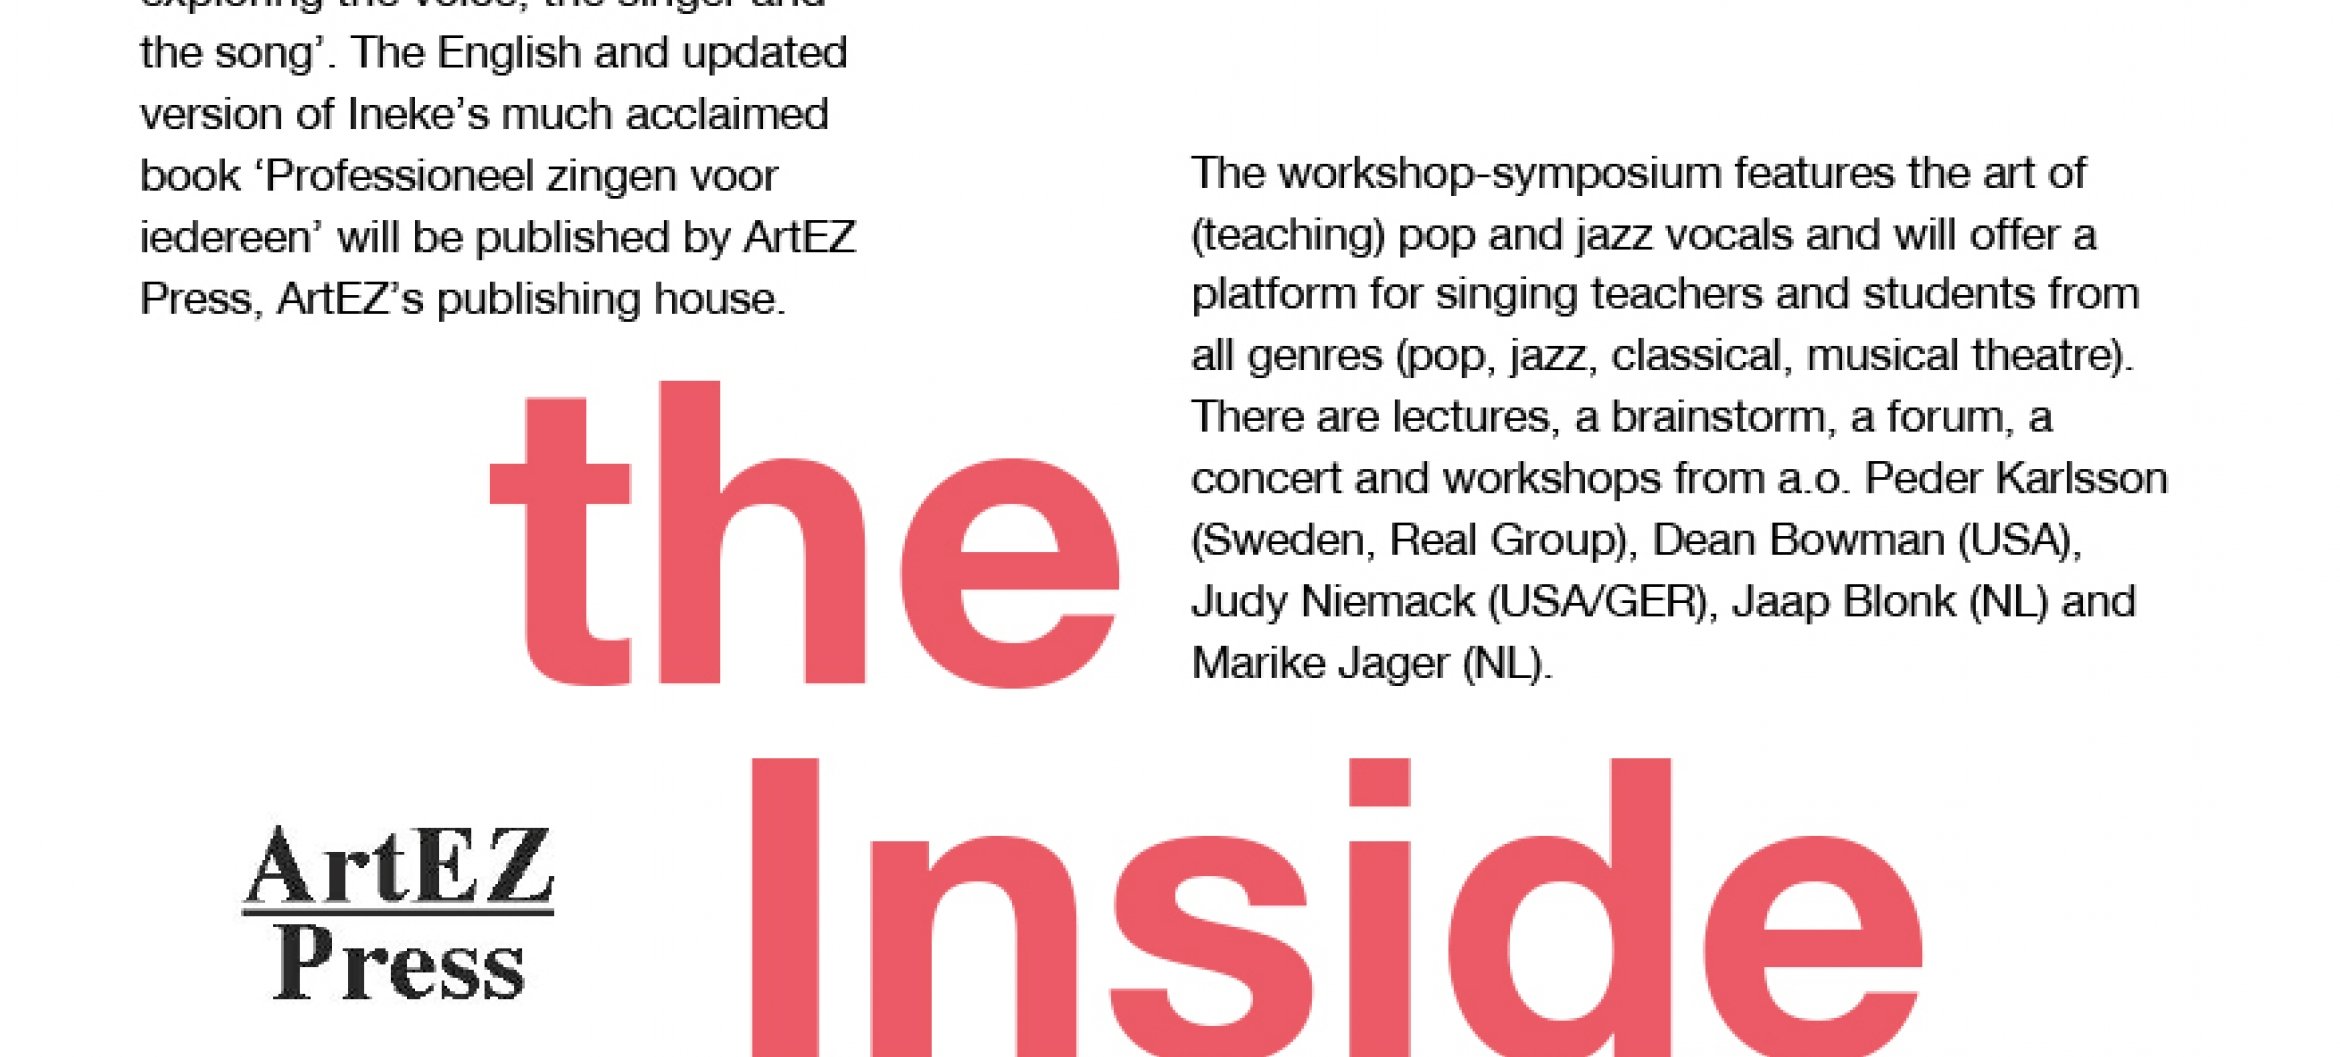 Boekpresentatie, symposium &amp; workshops over (lesgeven in) zang jazz en pop